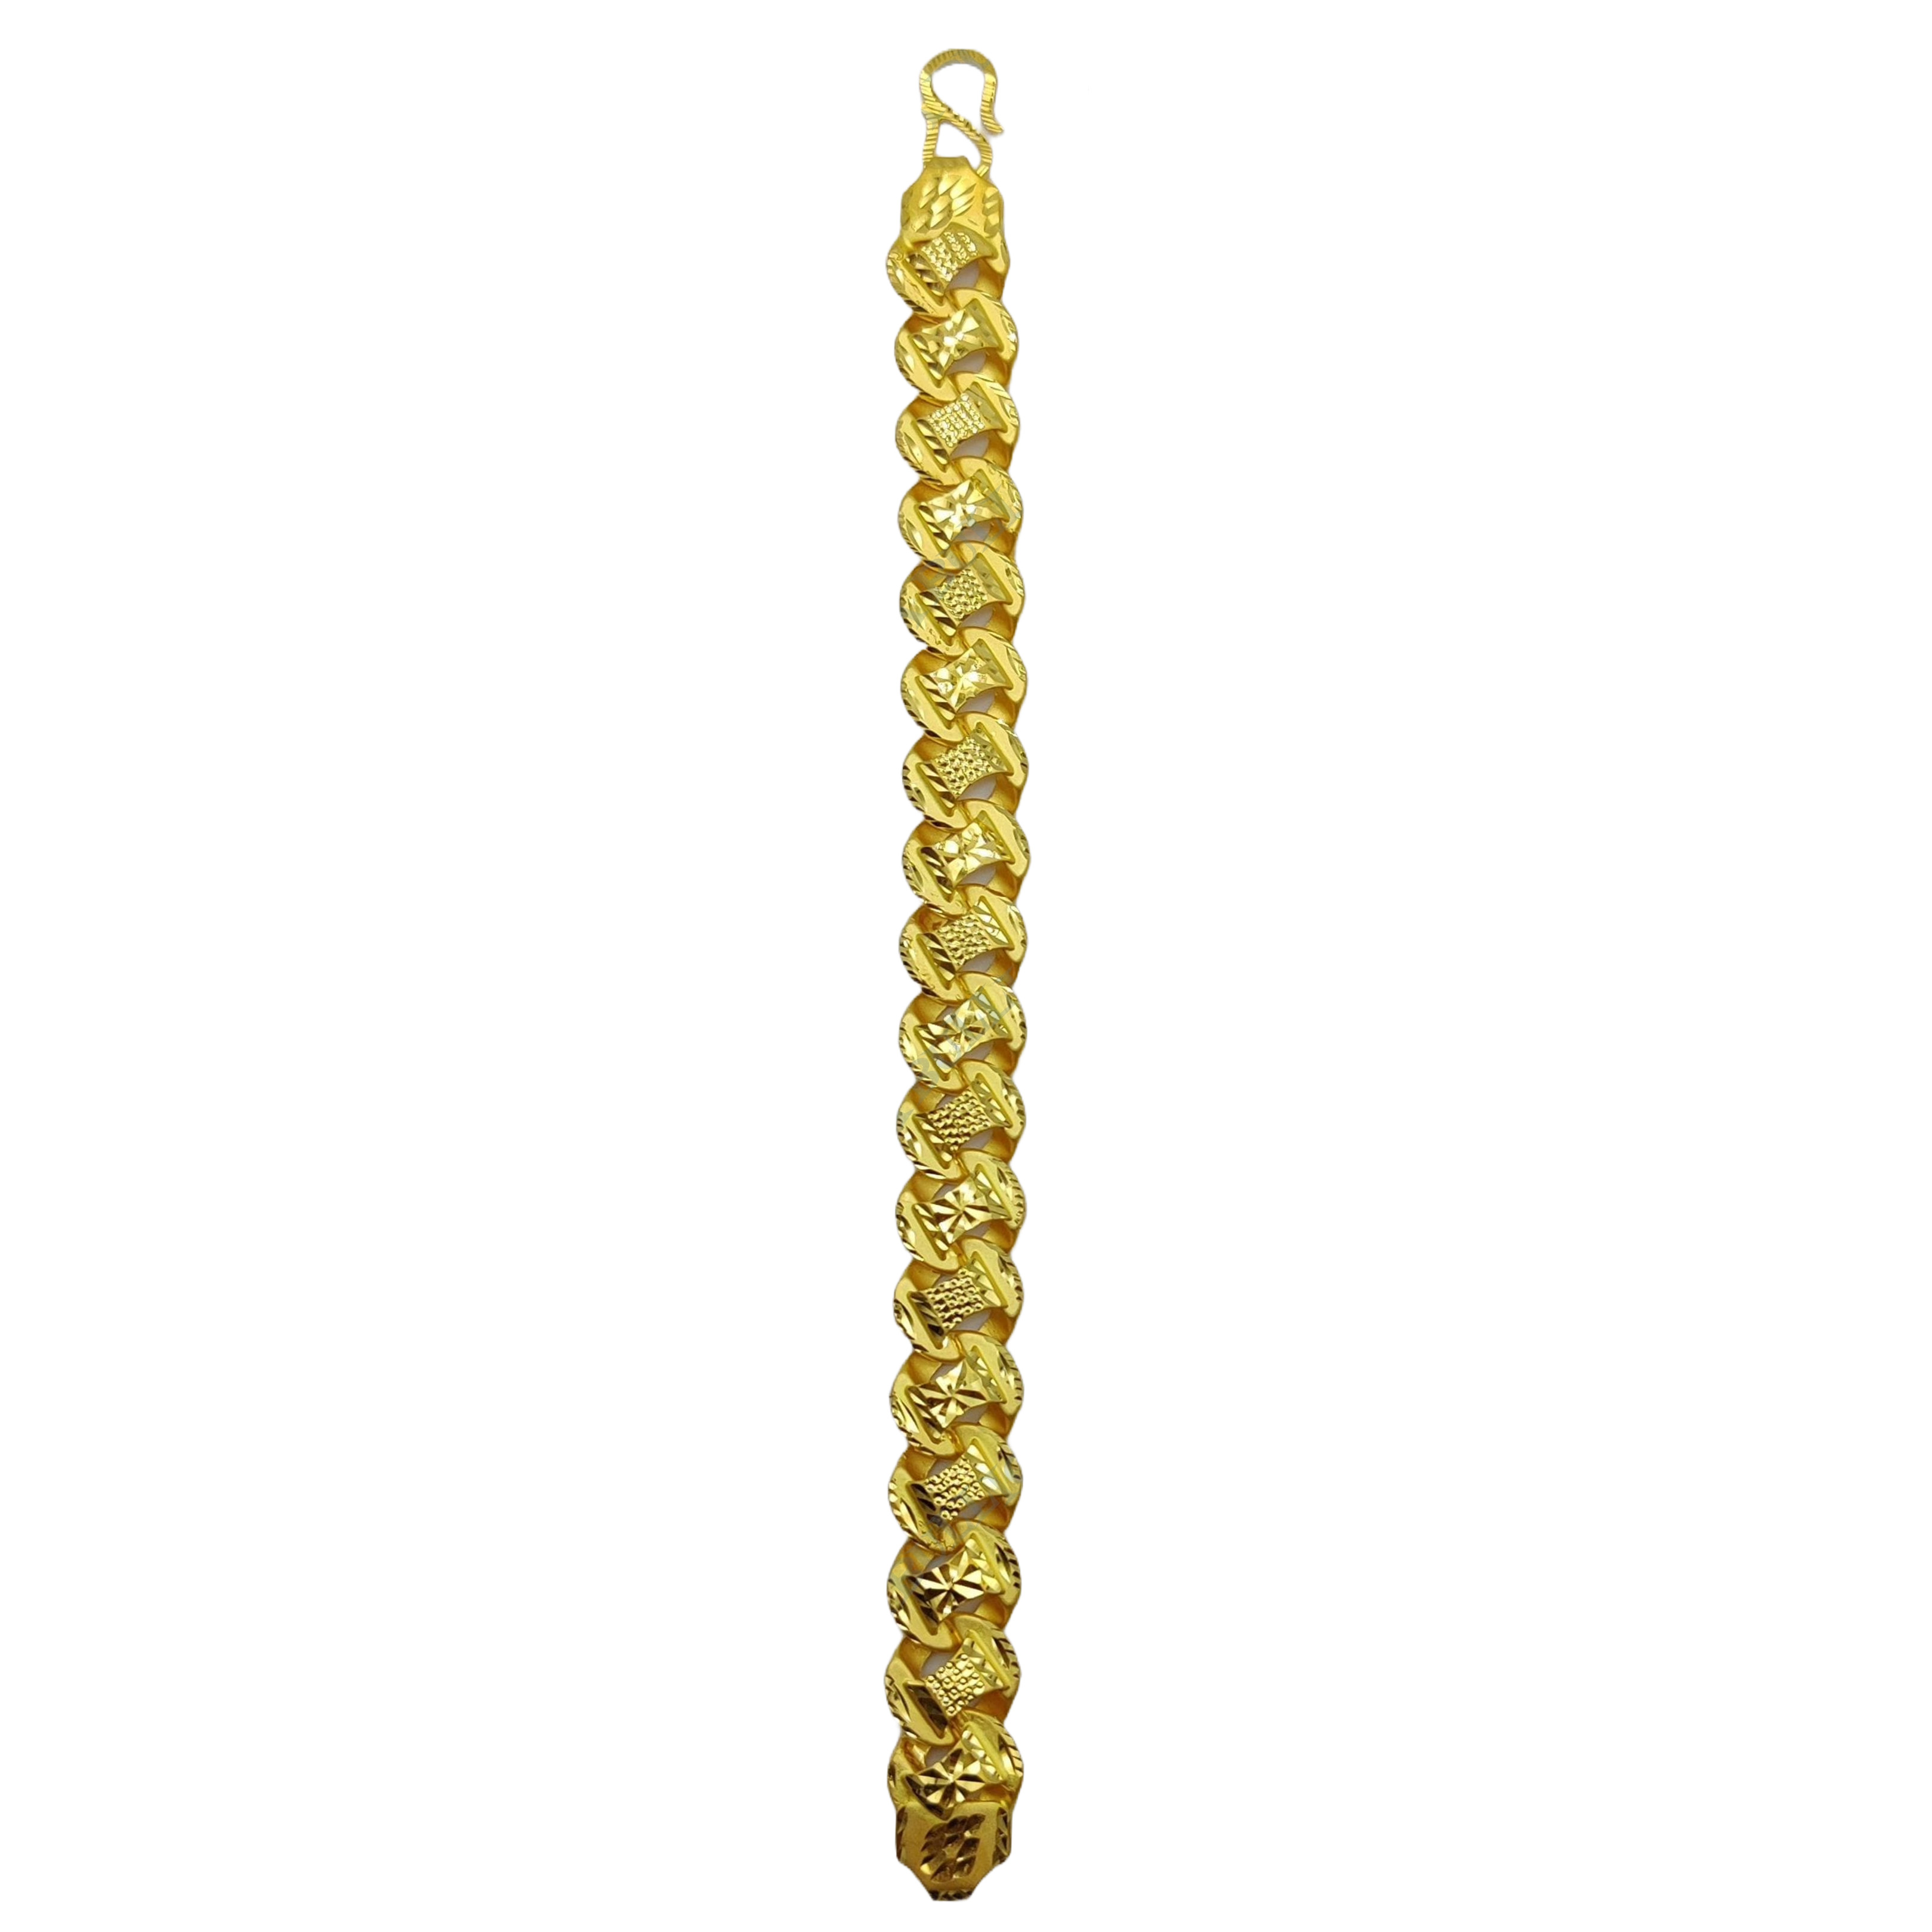 Latest Trending 22k Gold Bracelet Design for Men